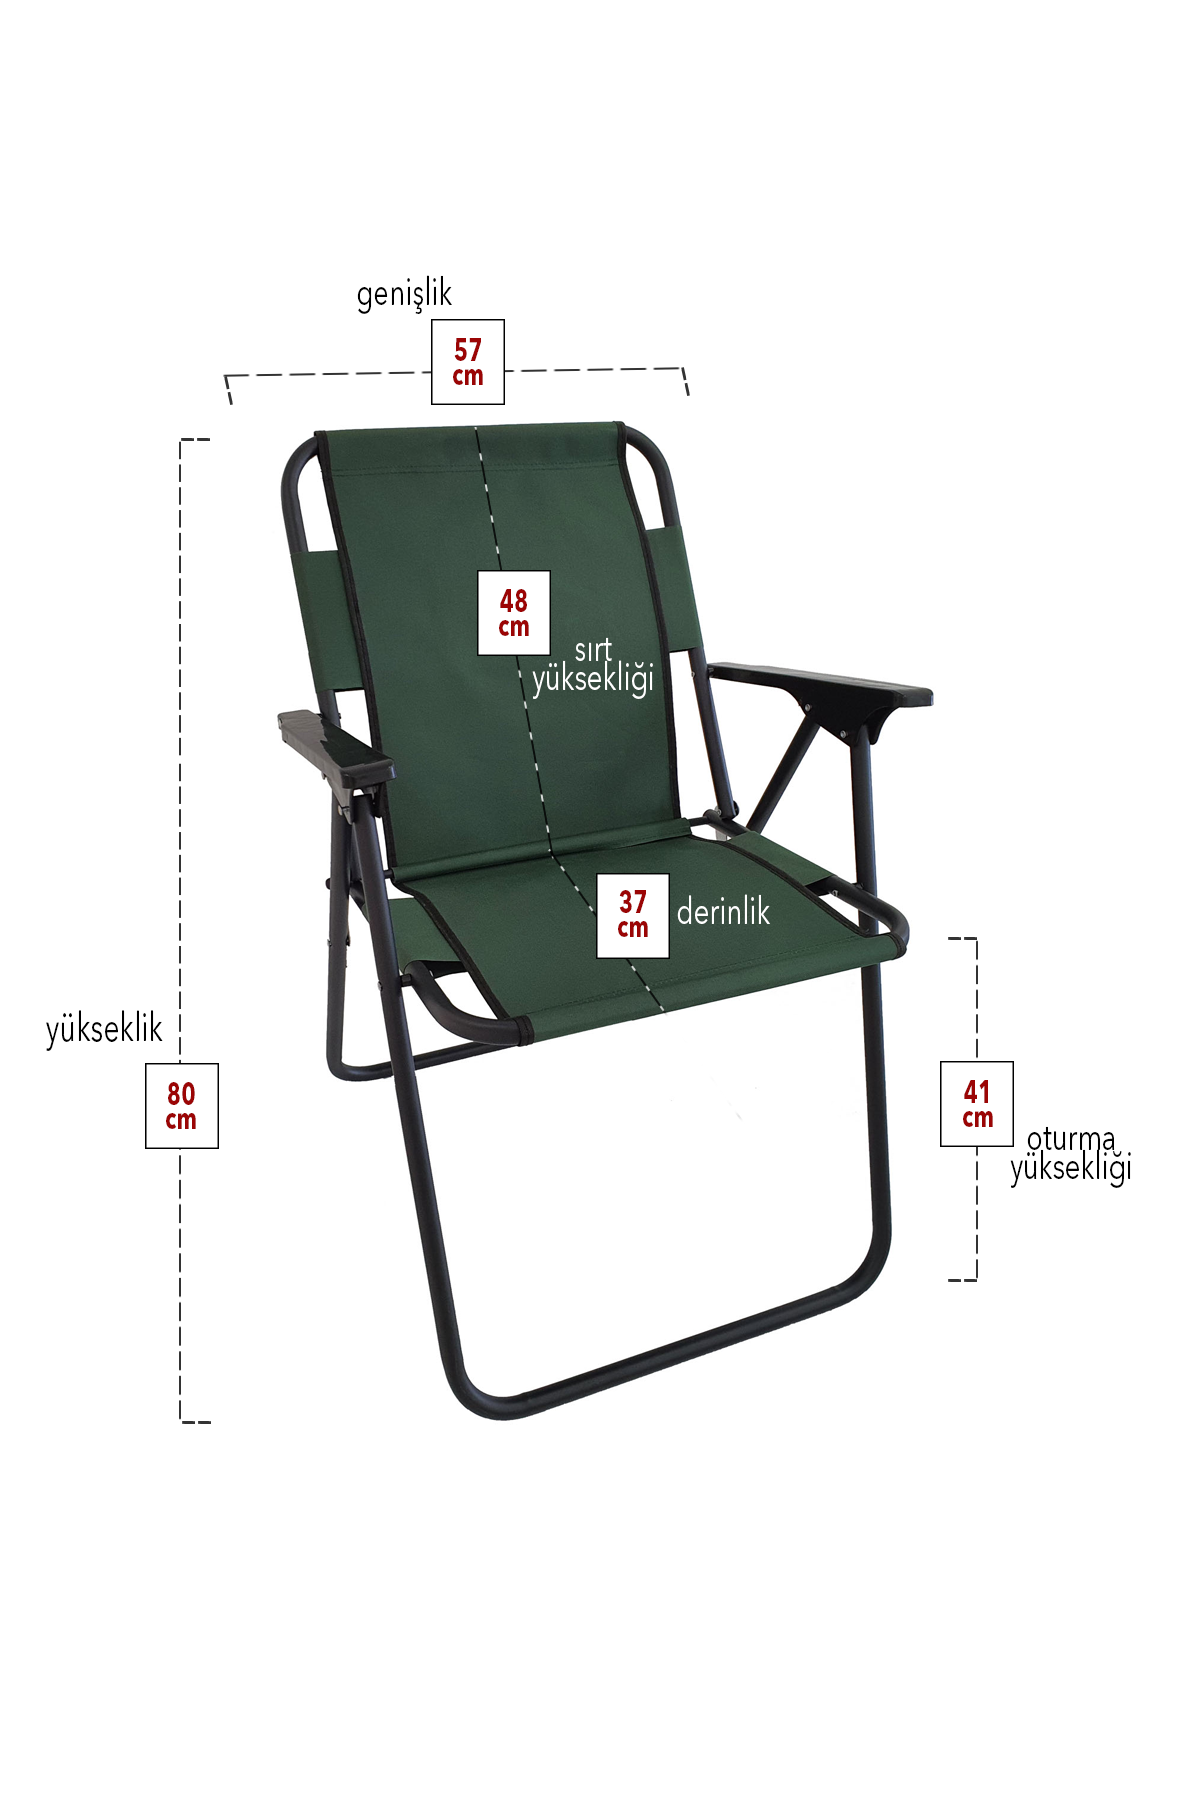 Bofigo 4 Pcs Camping Chair Folding Chair Picnic Chair Beach Chair Green